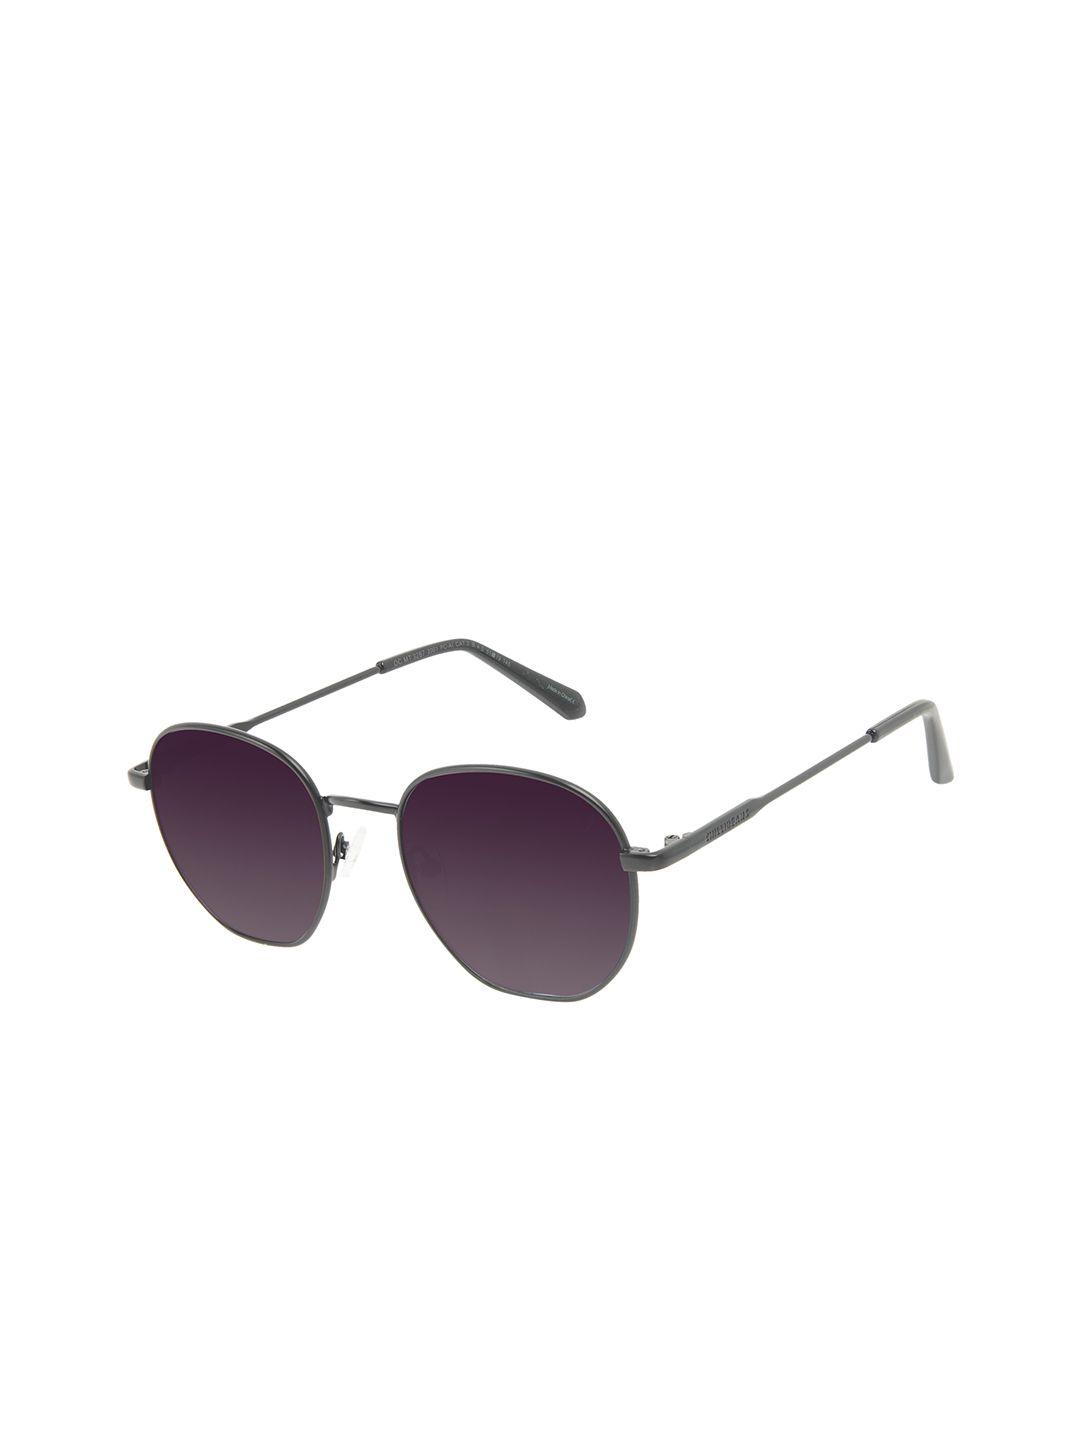 chilli-beans-unisex-purple-lens-&-black-sunglasses-uv-protected-lens-ocmt32872001